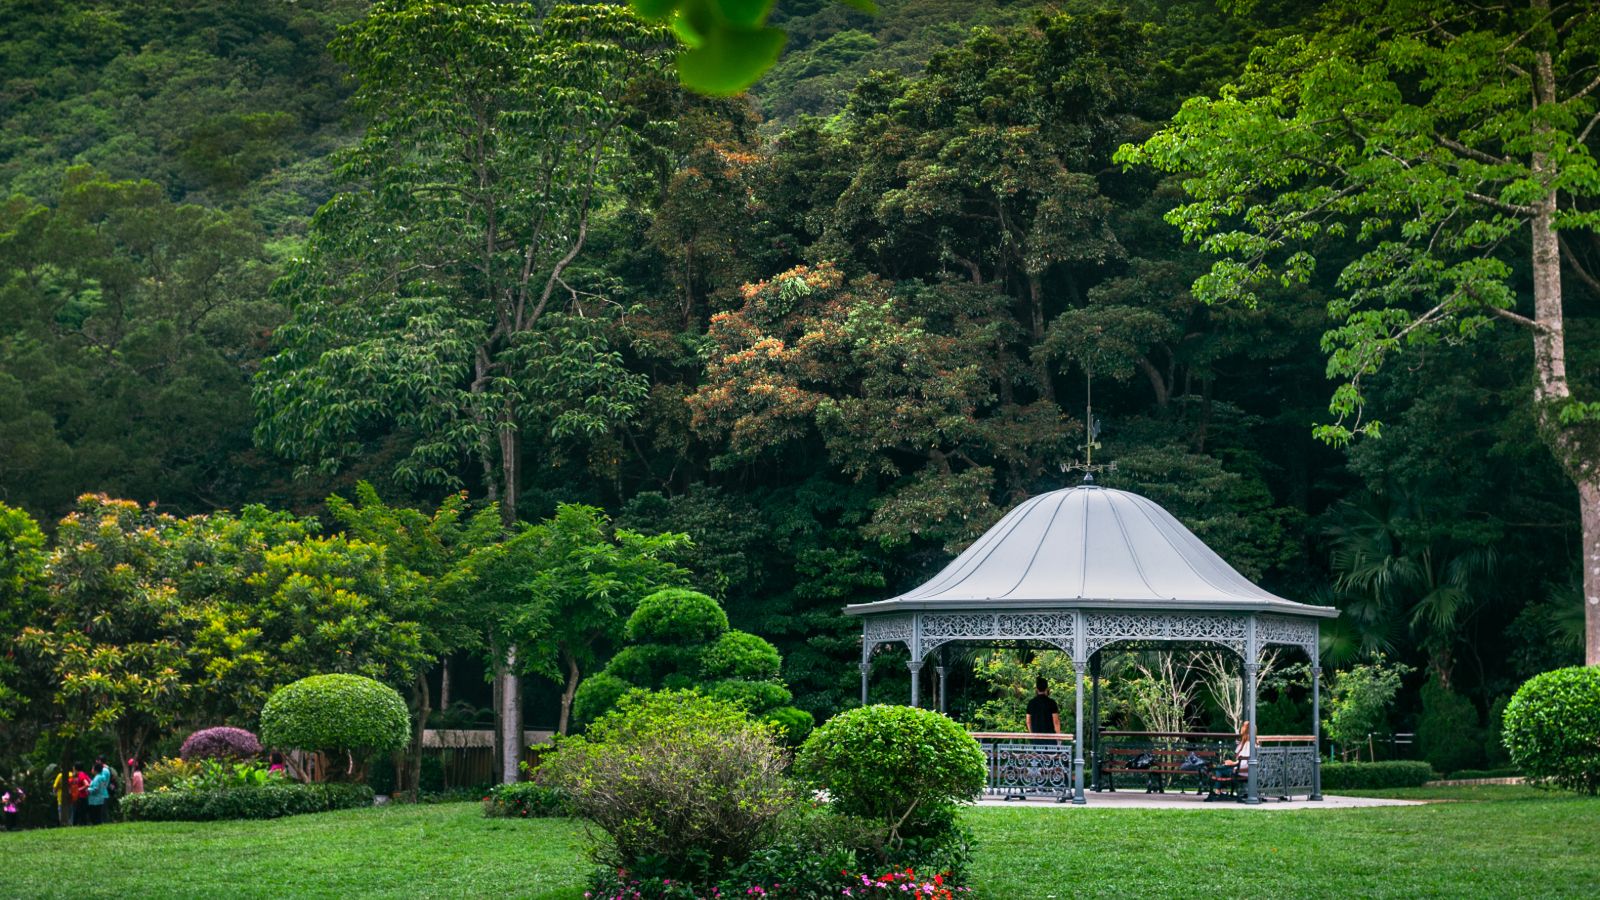 The British-style Victoria Peak Garden is a lush hidden gem on the Peak.